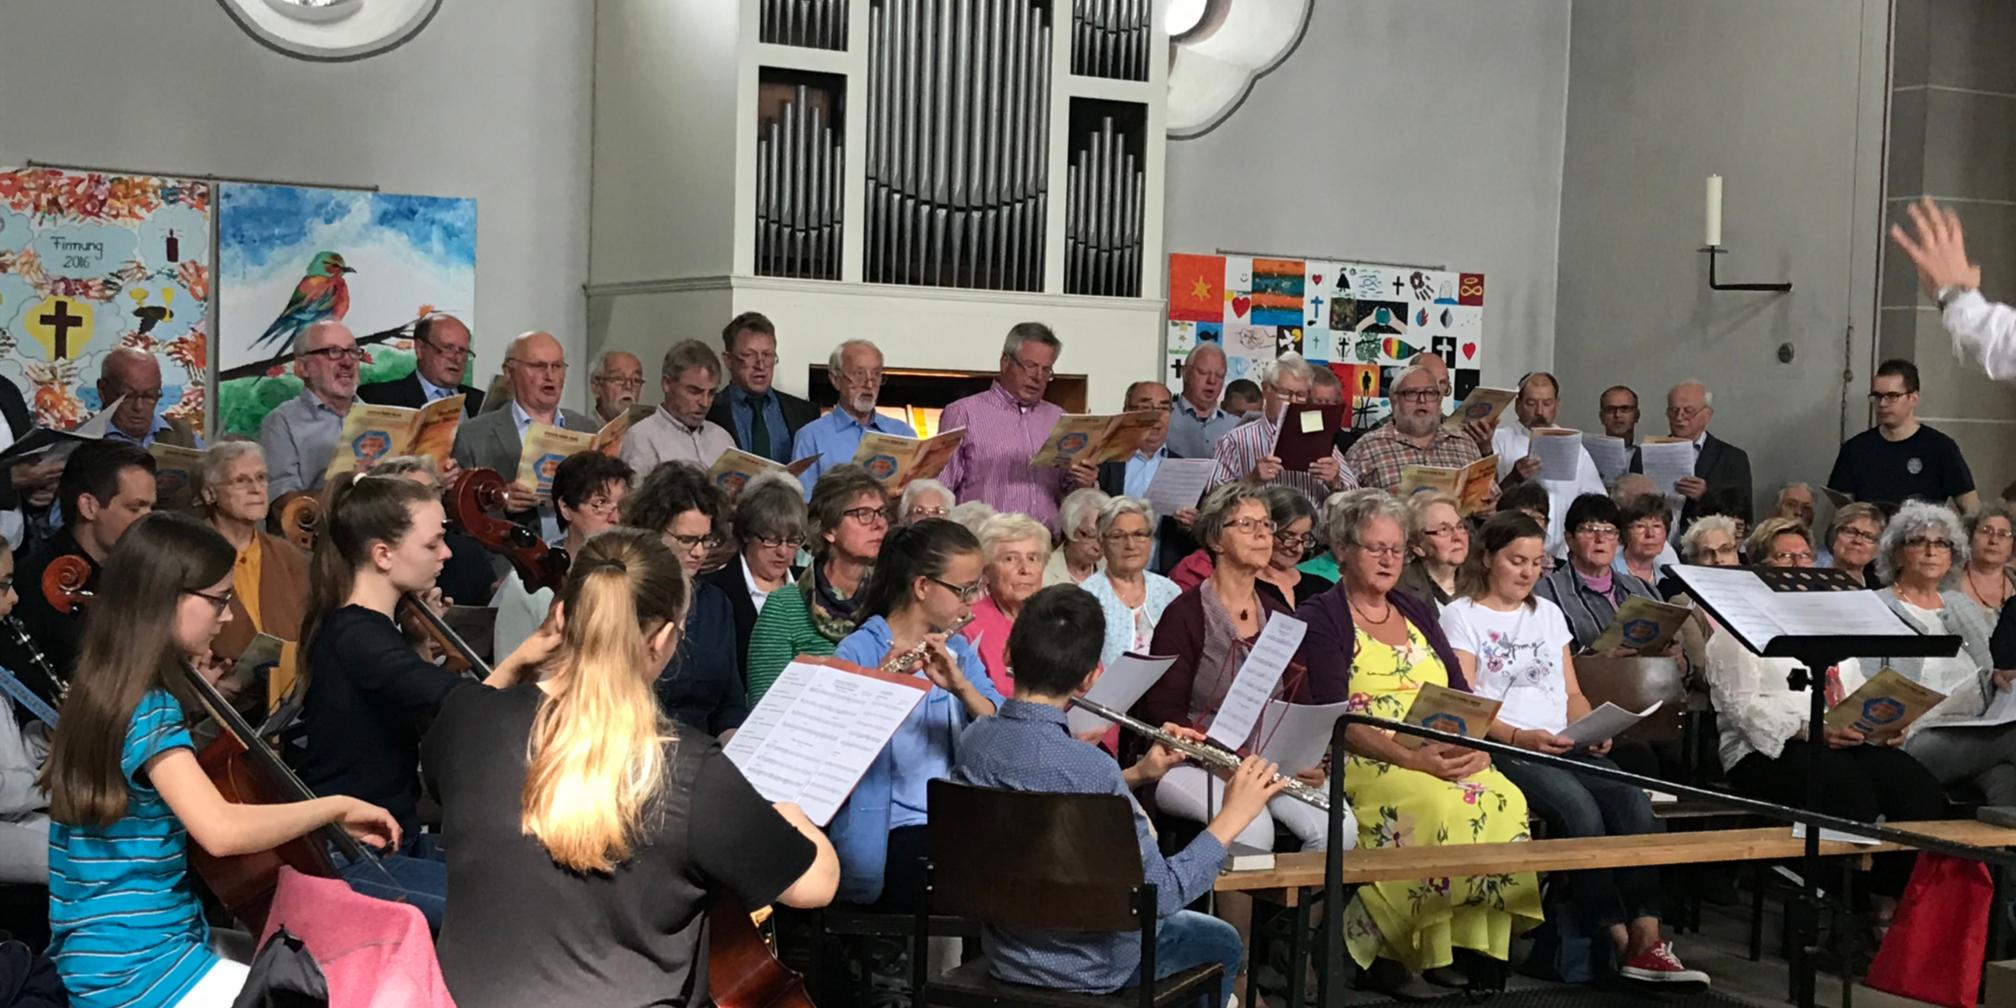 2018-06-17_Chöre und Orchester (7)